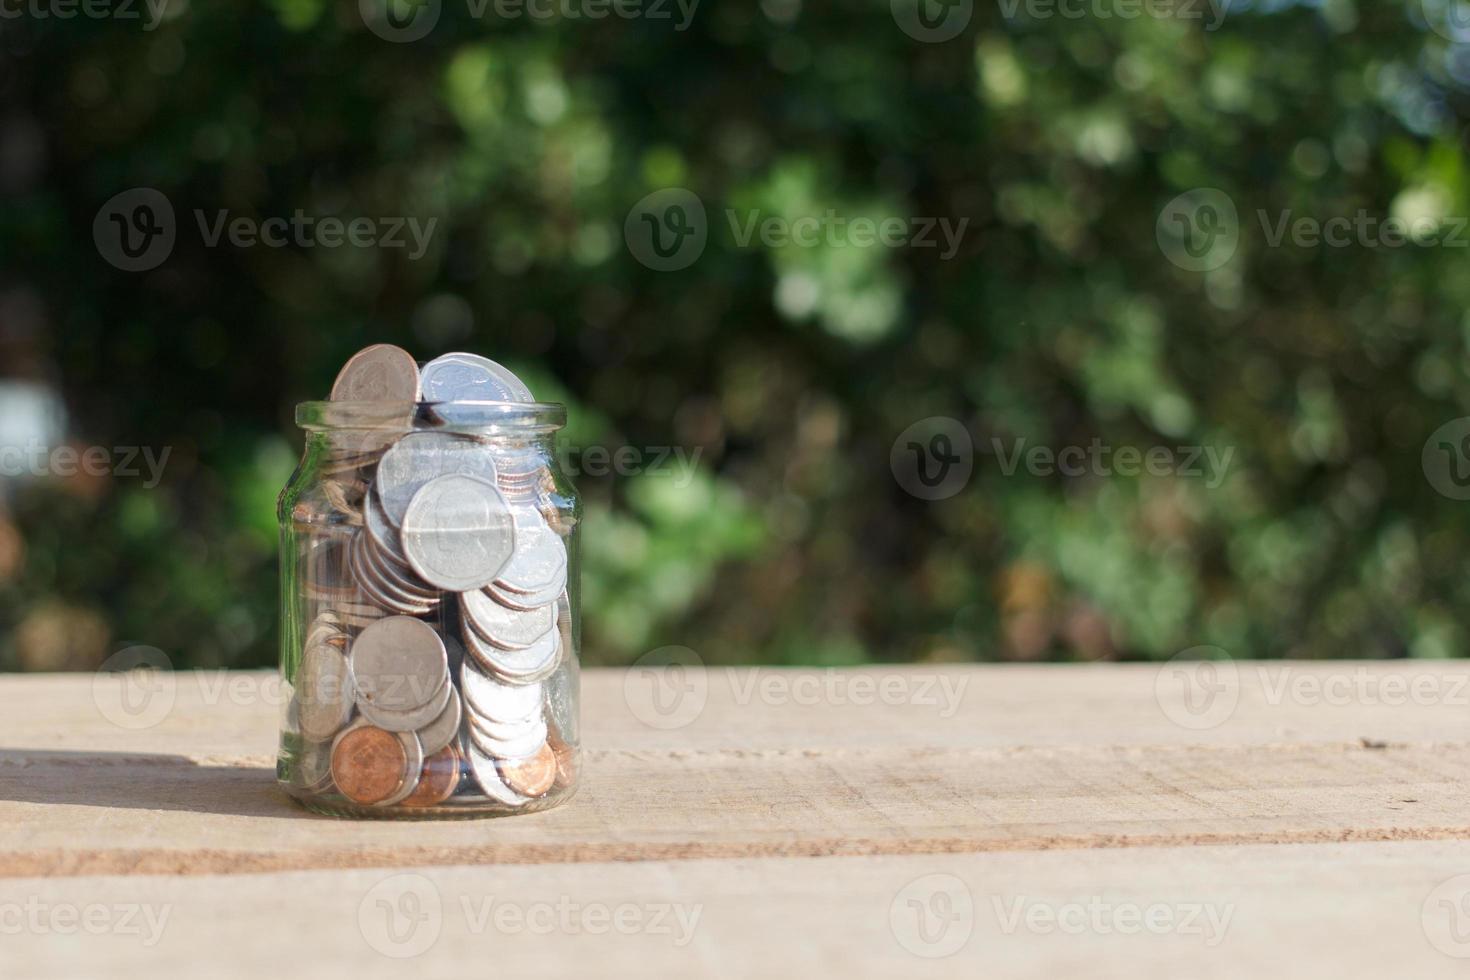 monedas en un frasco transparente colocado sobre tablones de madera al aire libre en el jardín, concepto de ahorro de inversión. copie el espacio. foto